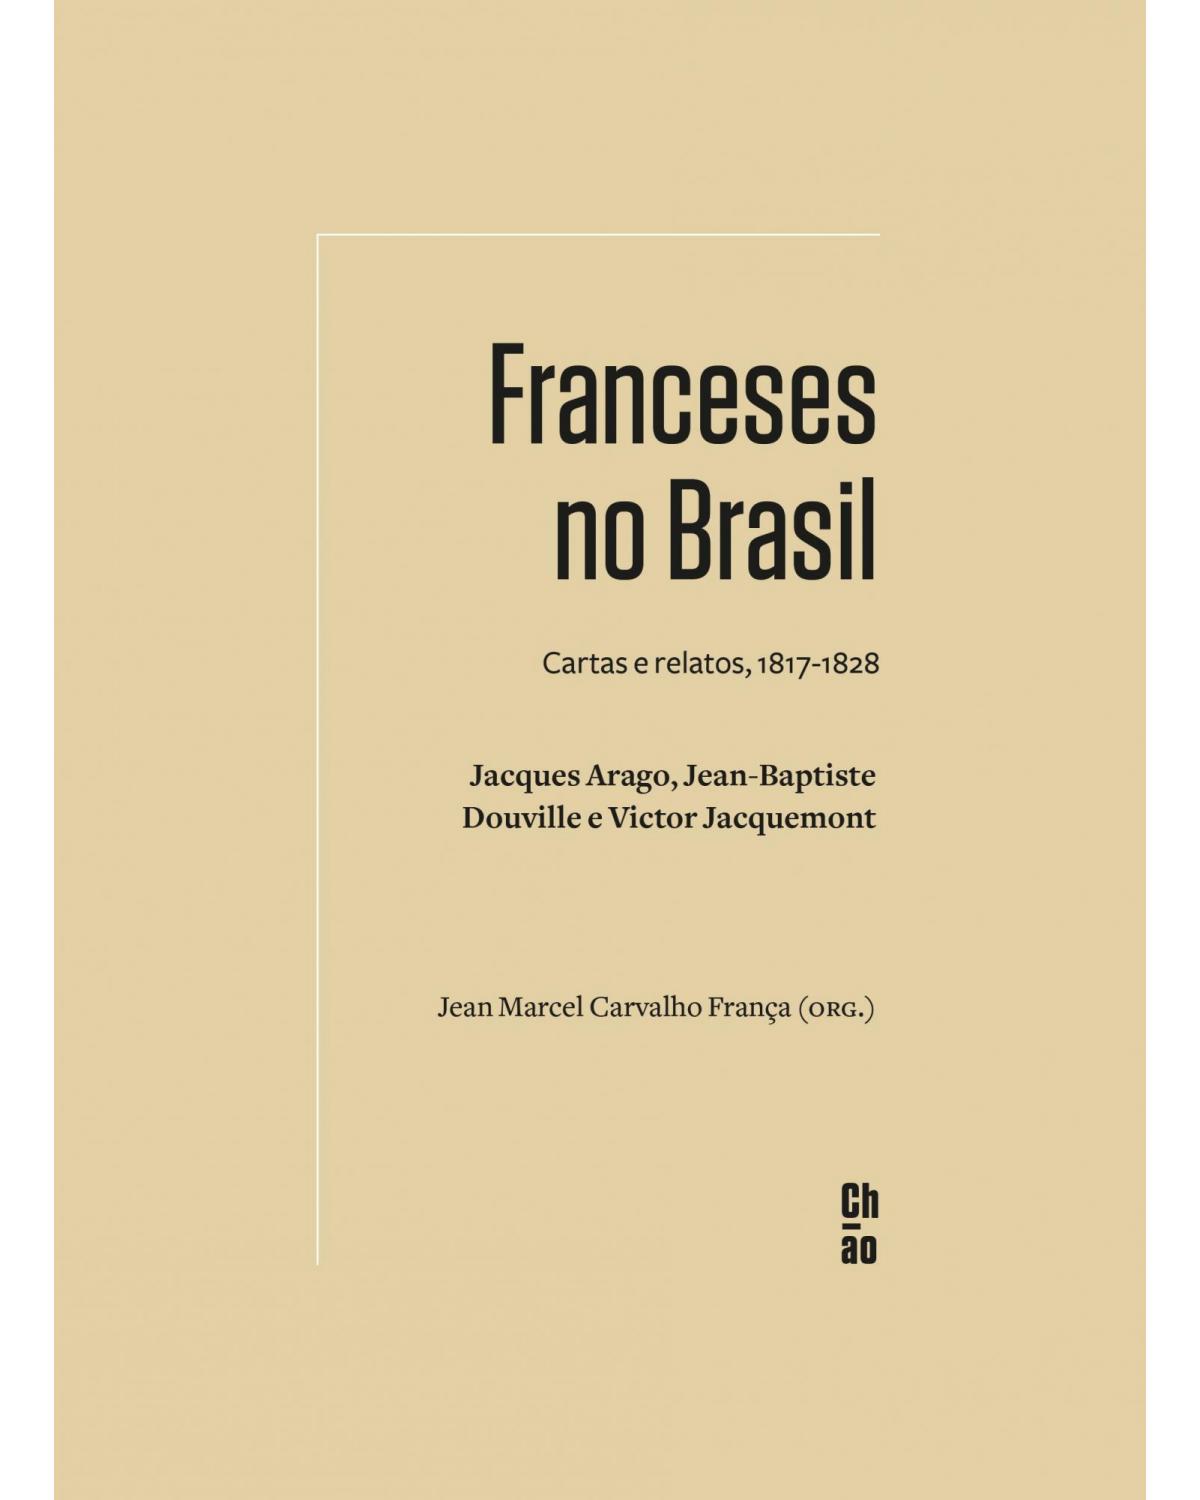 Franceses no Brasil: cartas e relatos, 1817-1828 - Jacques Arago, Jean-Baptiste Douville e Victor Jacquemont - 1ª Edição | 2021